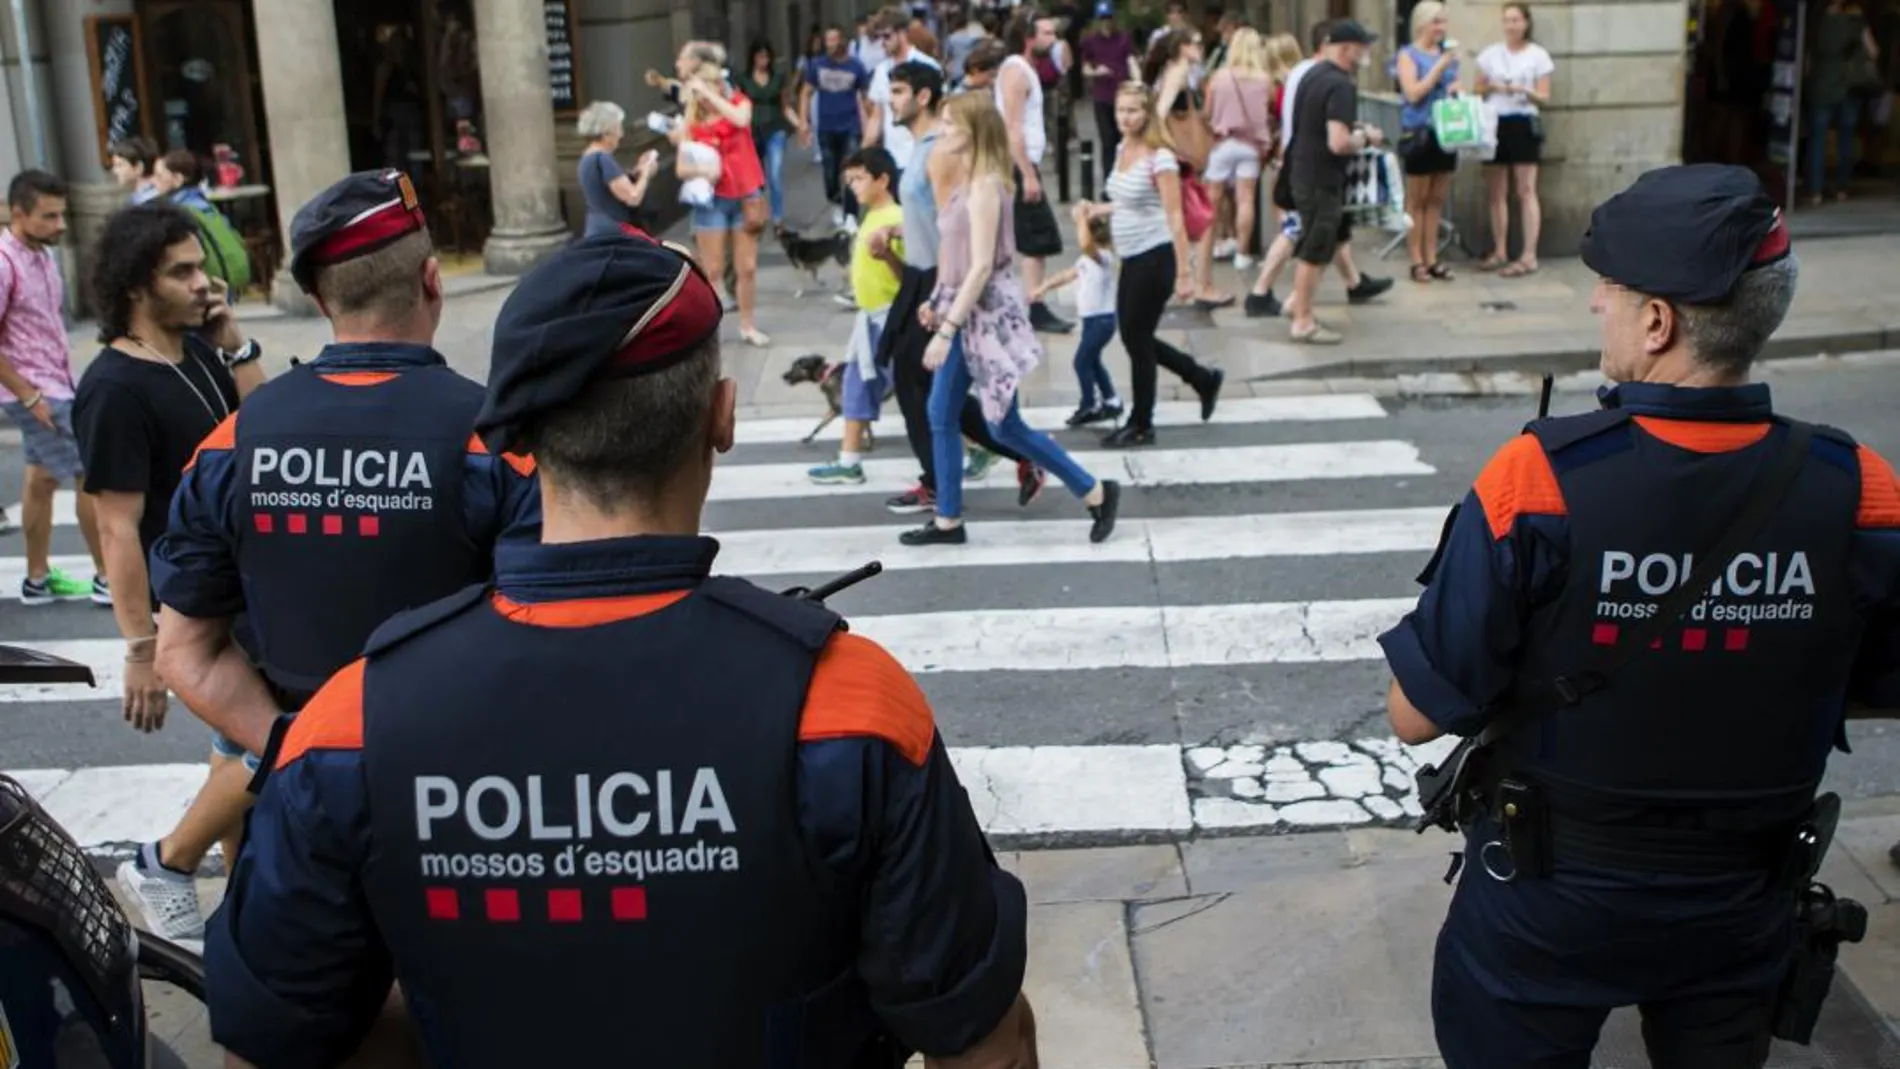 El magistrado requiere a los Mossos para que identifiquen a tres mandos de la policía catalana, después de que varios agentes investigados se han referido a ellos en sus comparecencias judiciales